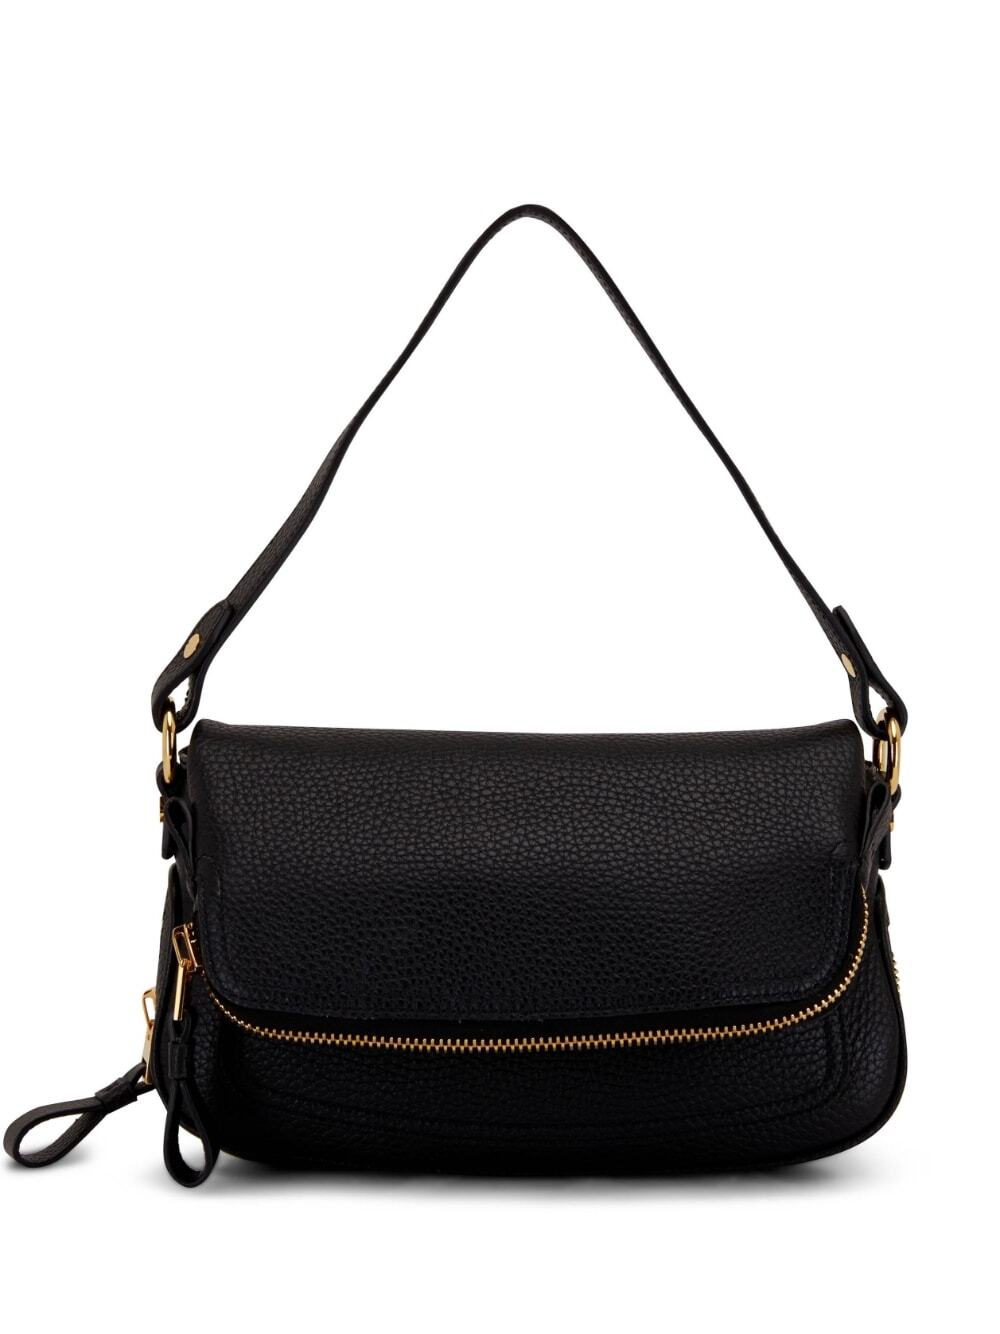 TOM FORD folded-design pebbled-leather shoulder bag - Black